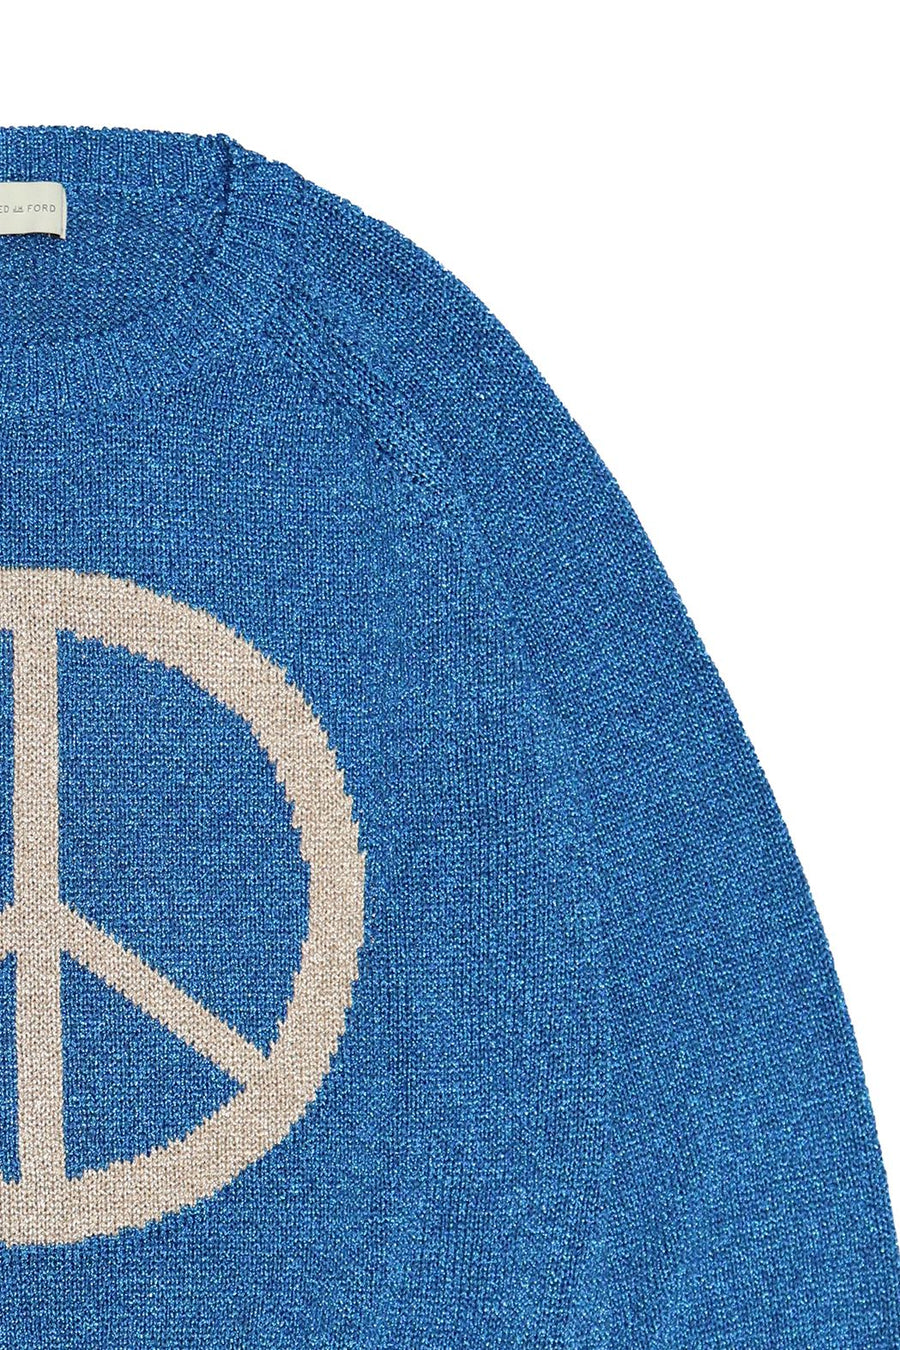 BED j.w. FORD × P.A.A  Peace Symbol Glitter Knit